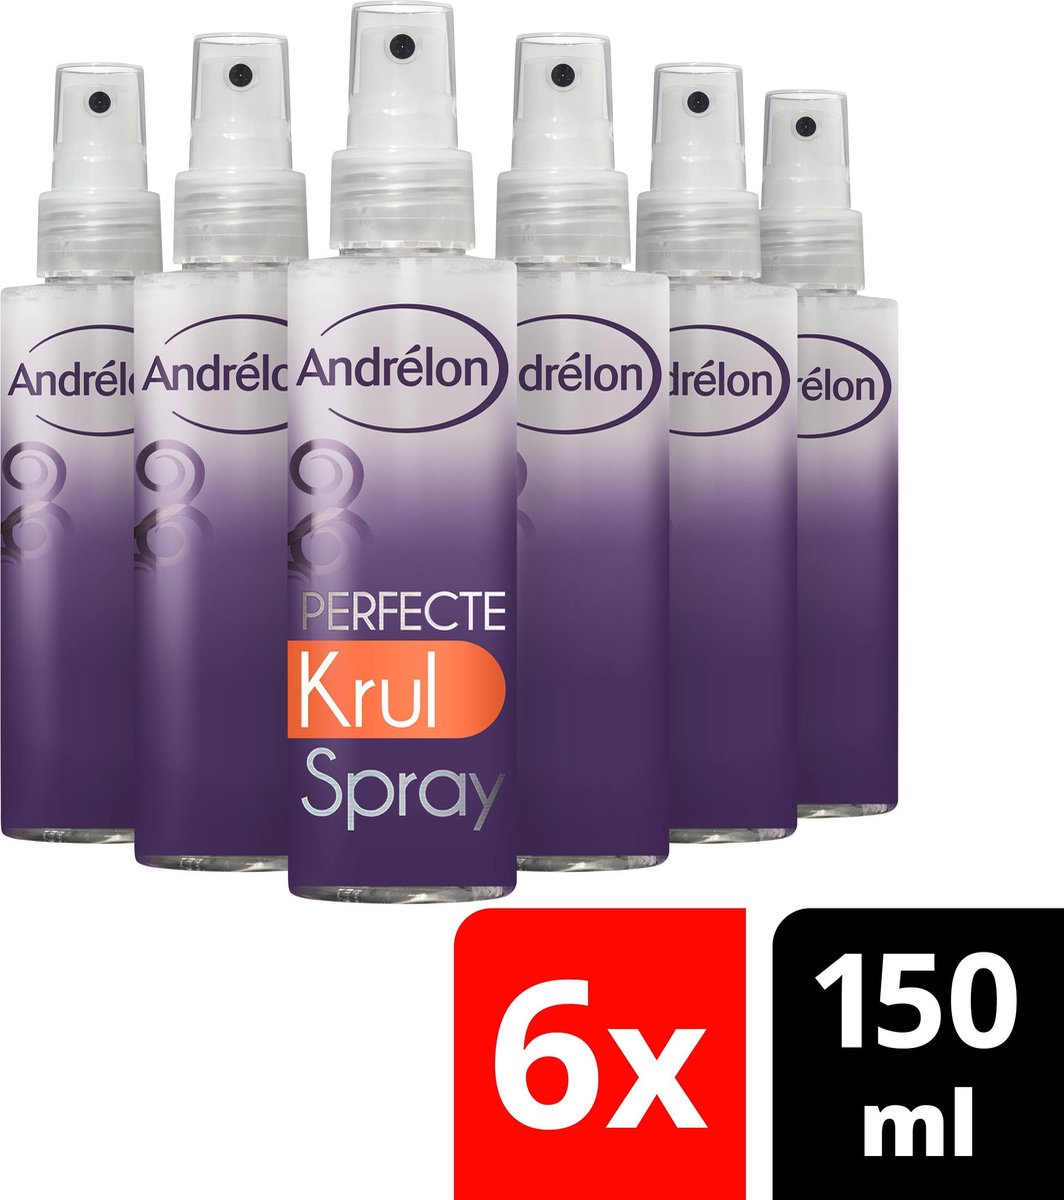 Andrélon Booster Perfecte Krul Haarspray - 6 x 150 ml - Voordeelverpakking  | bol.com